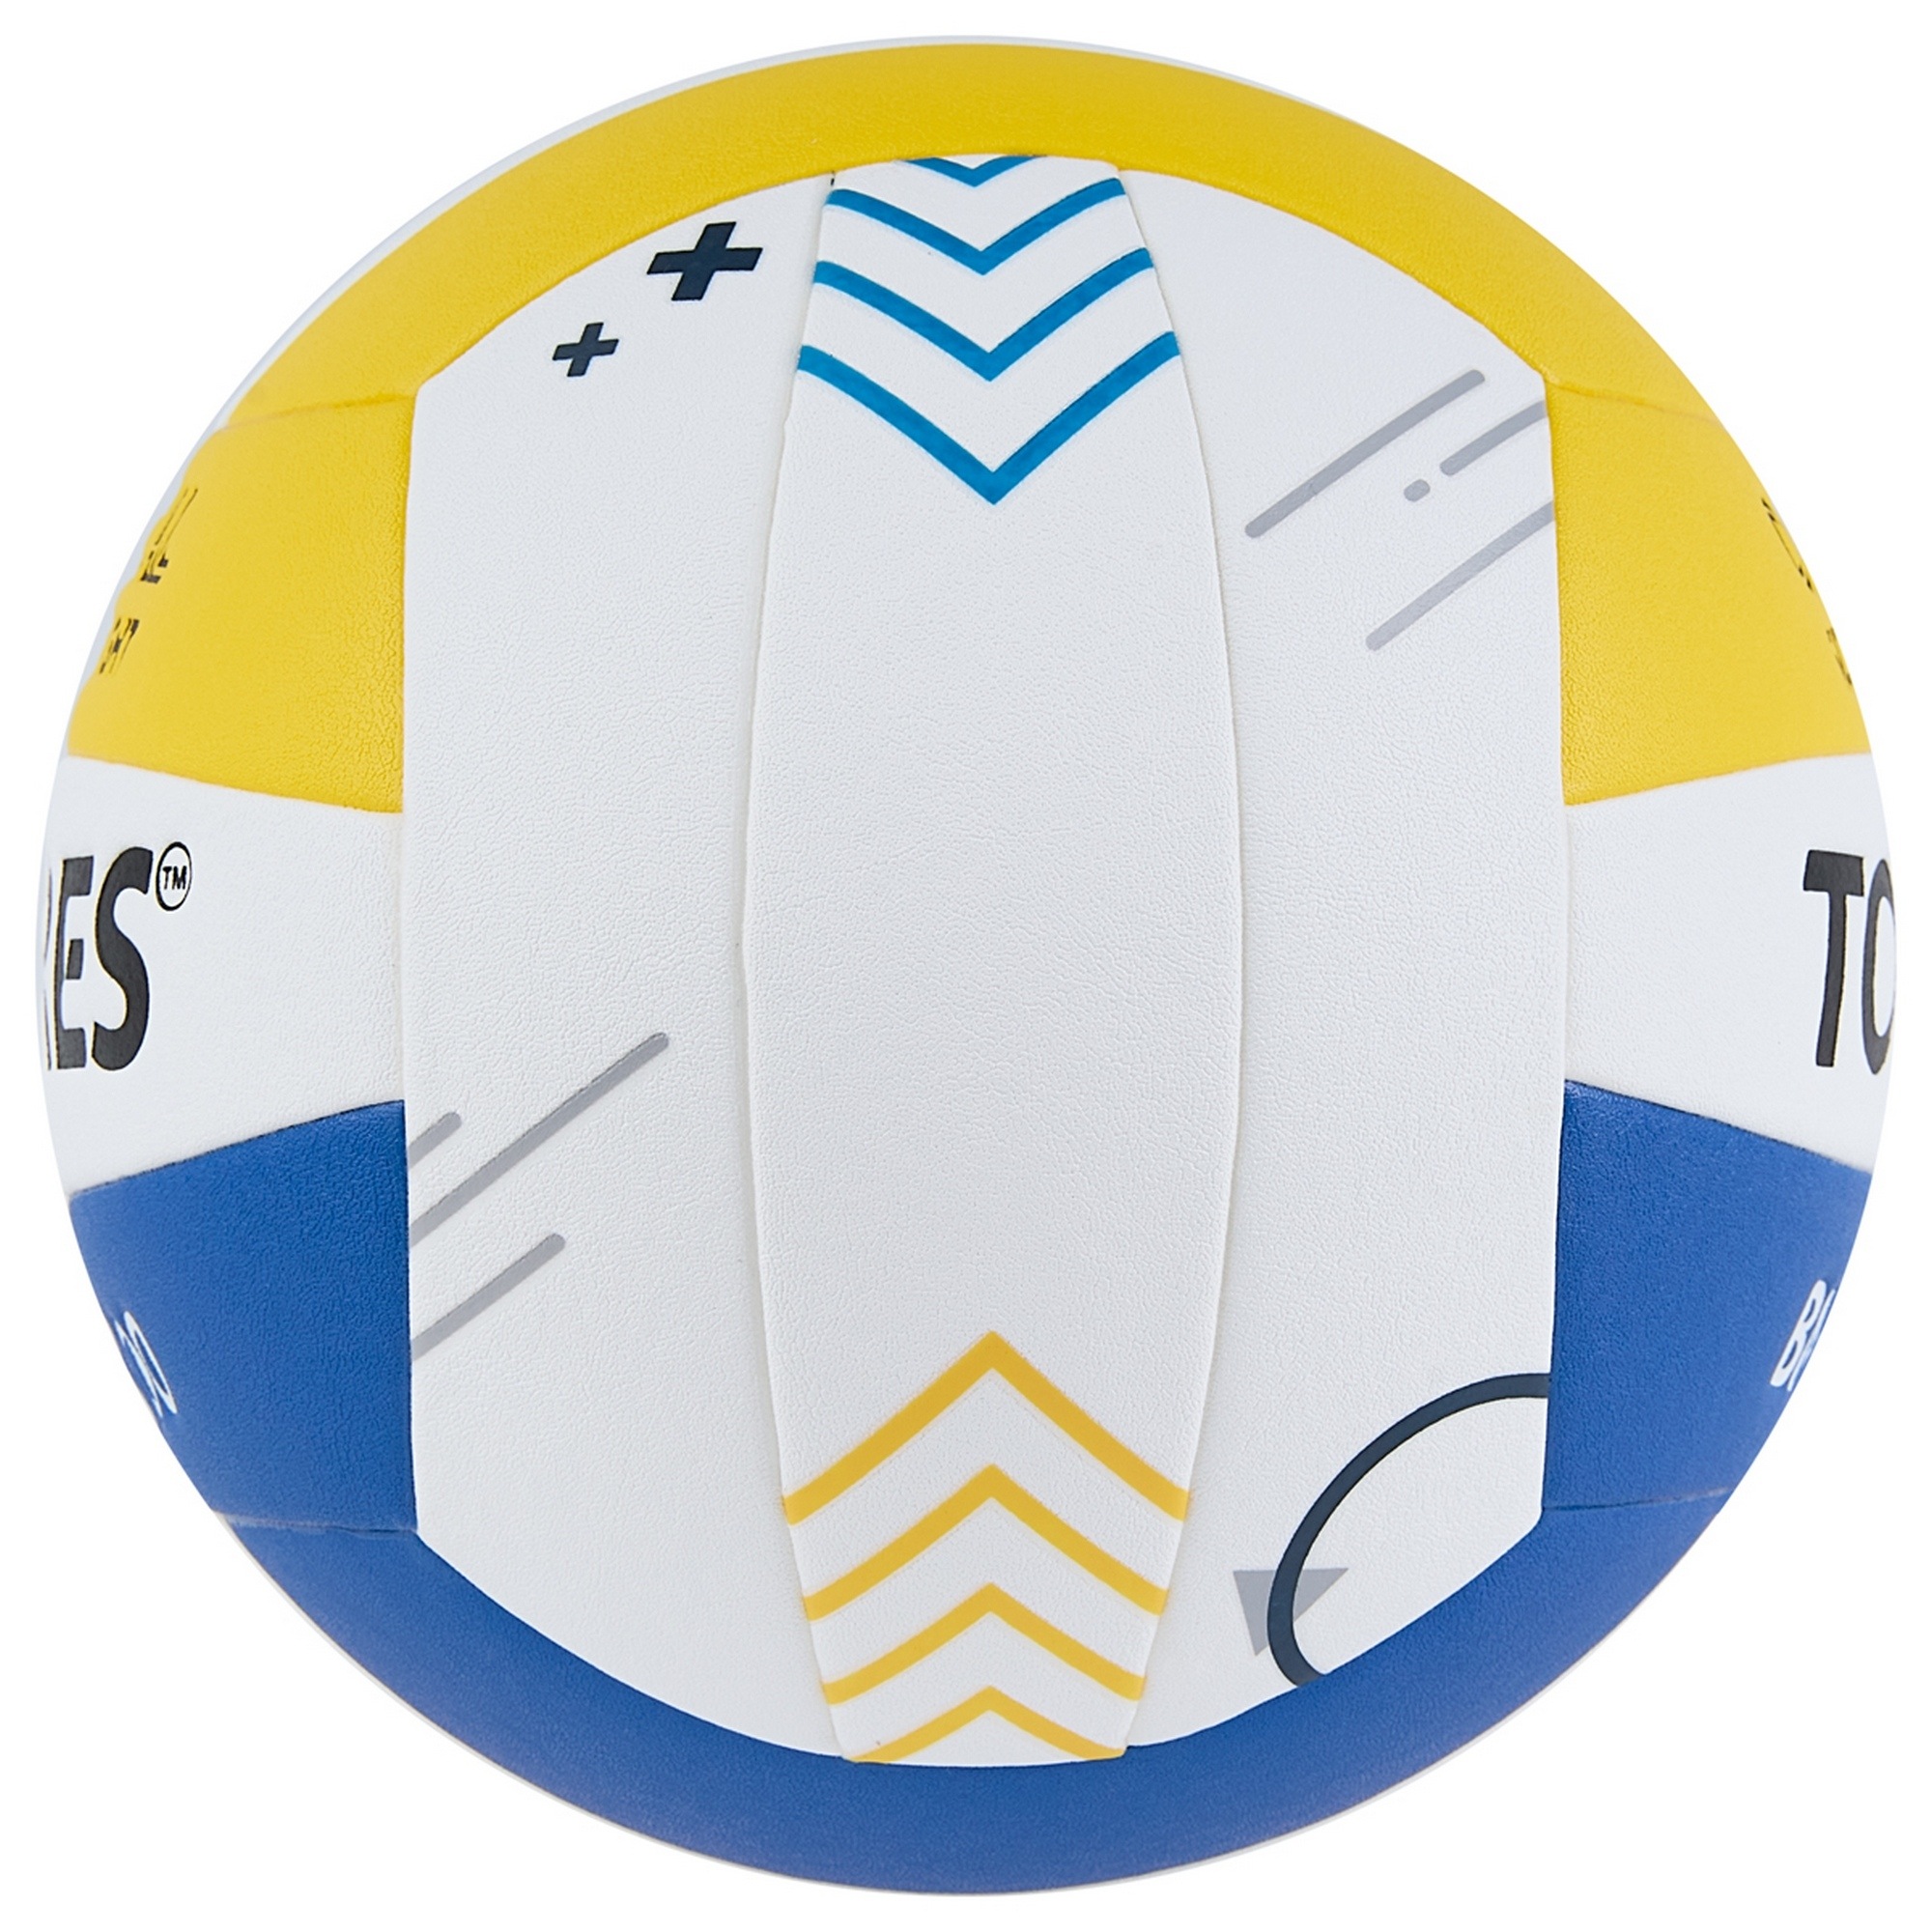 Мяч волейбольный Torres BM1200 V42335 р.5 2000_2000